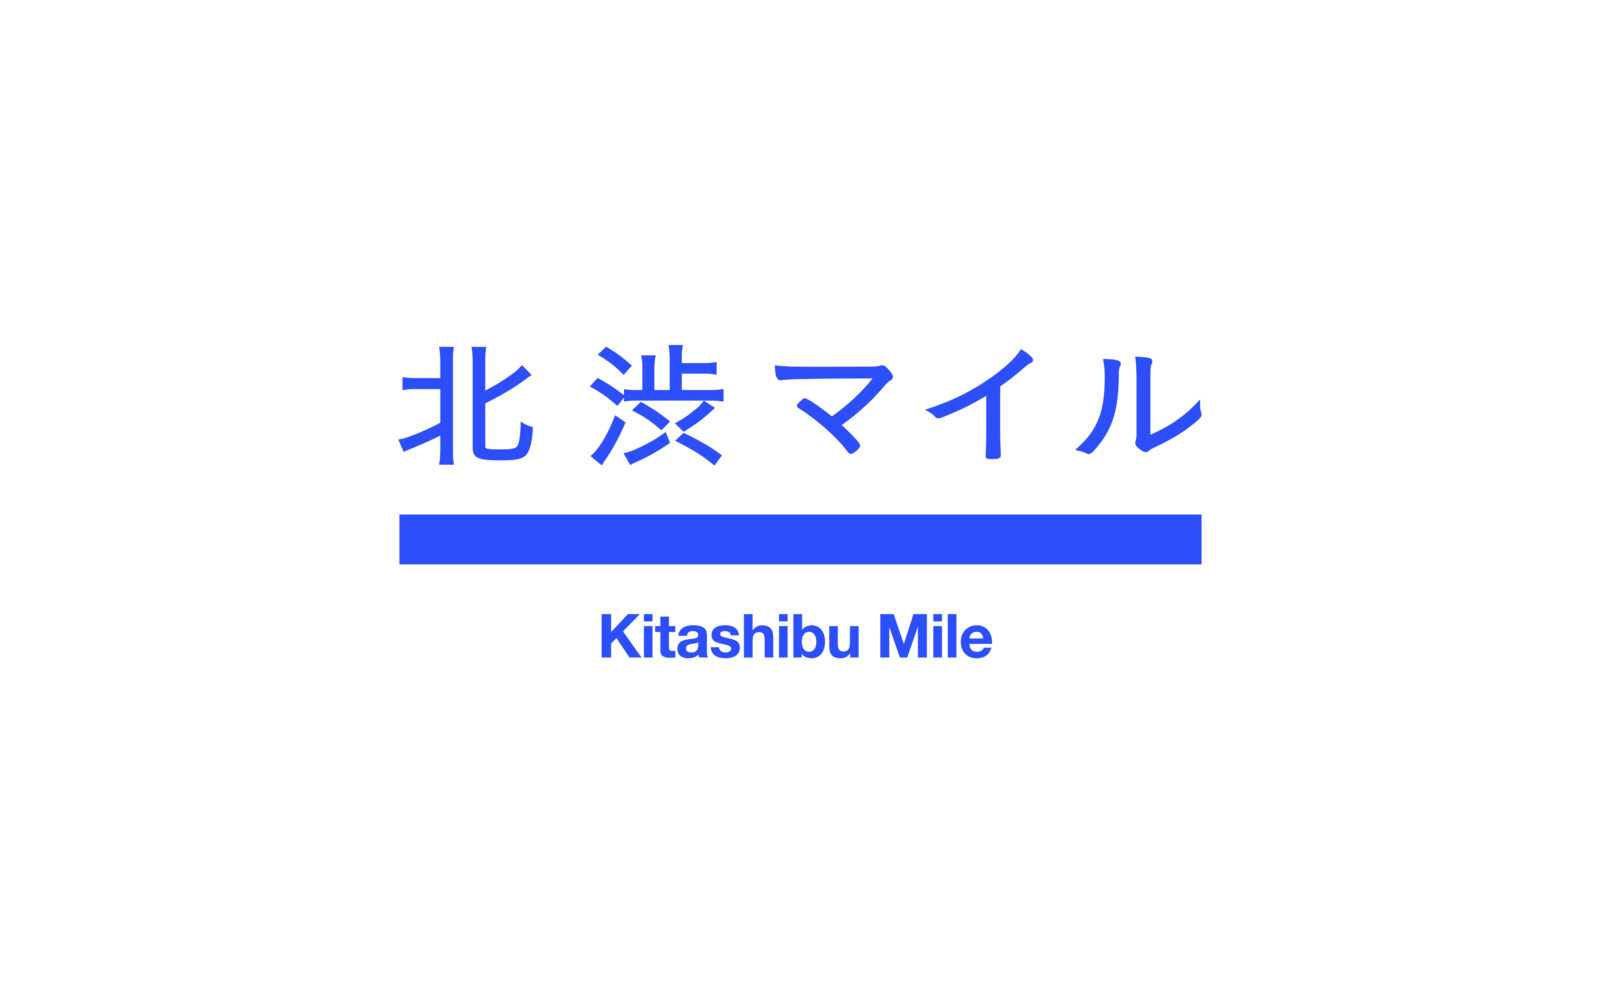 Kitashibu-Mile__-1_v4